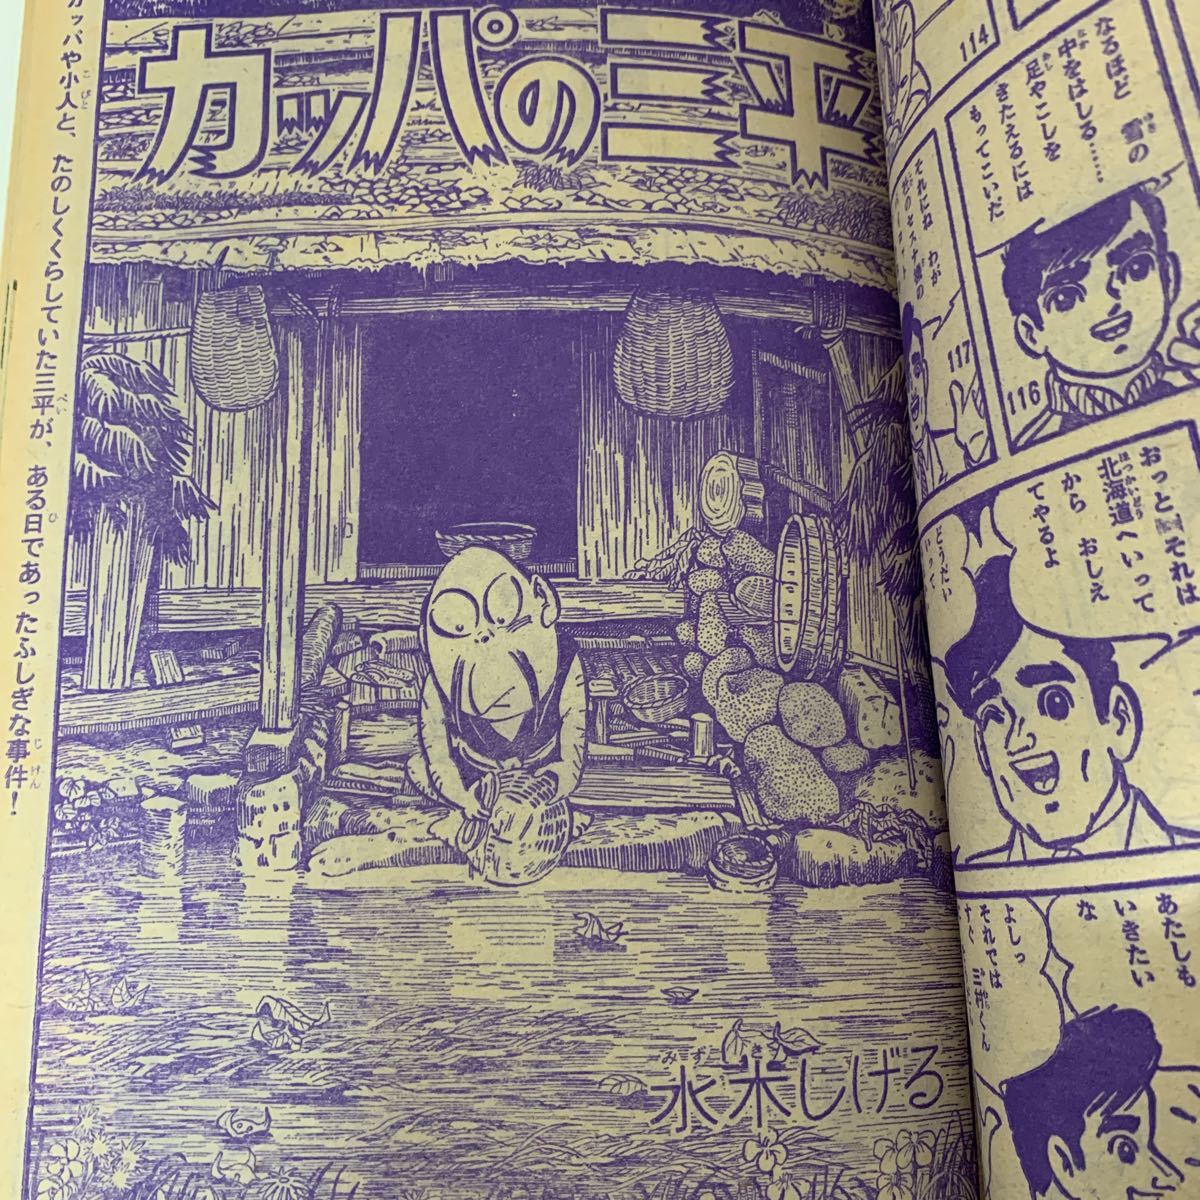 ぼくら1966年6月号 ウルトラQ怪獣ガラモン表紙 水木しげる 石森章太郎 